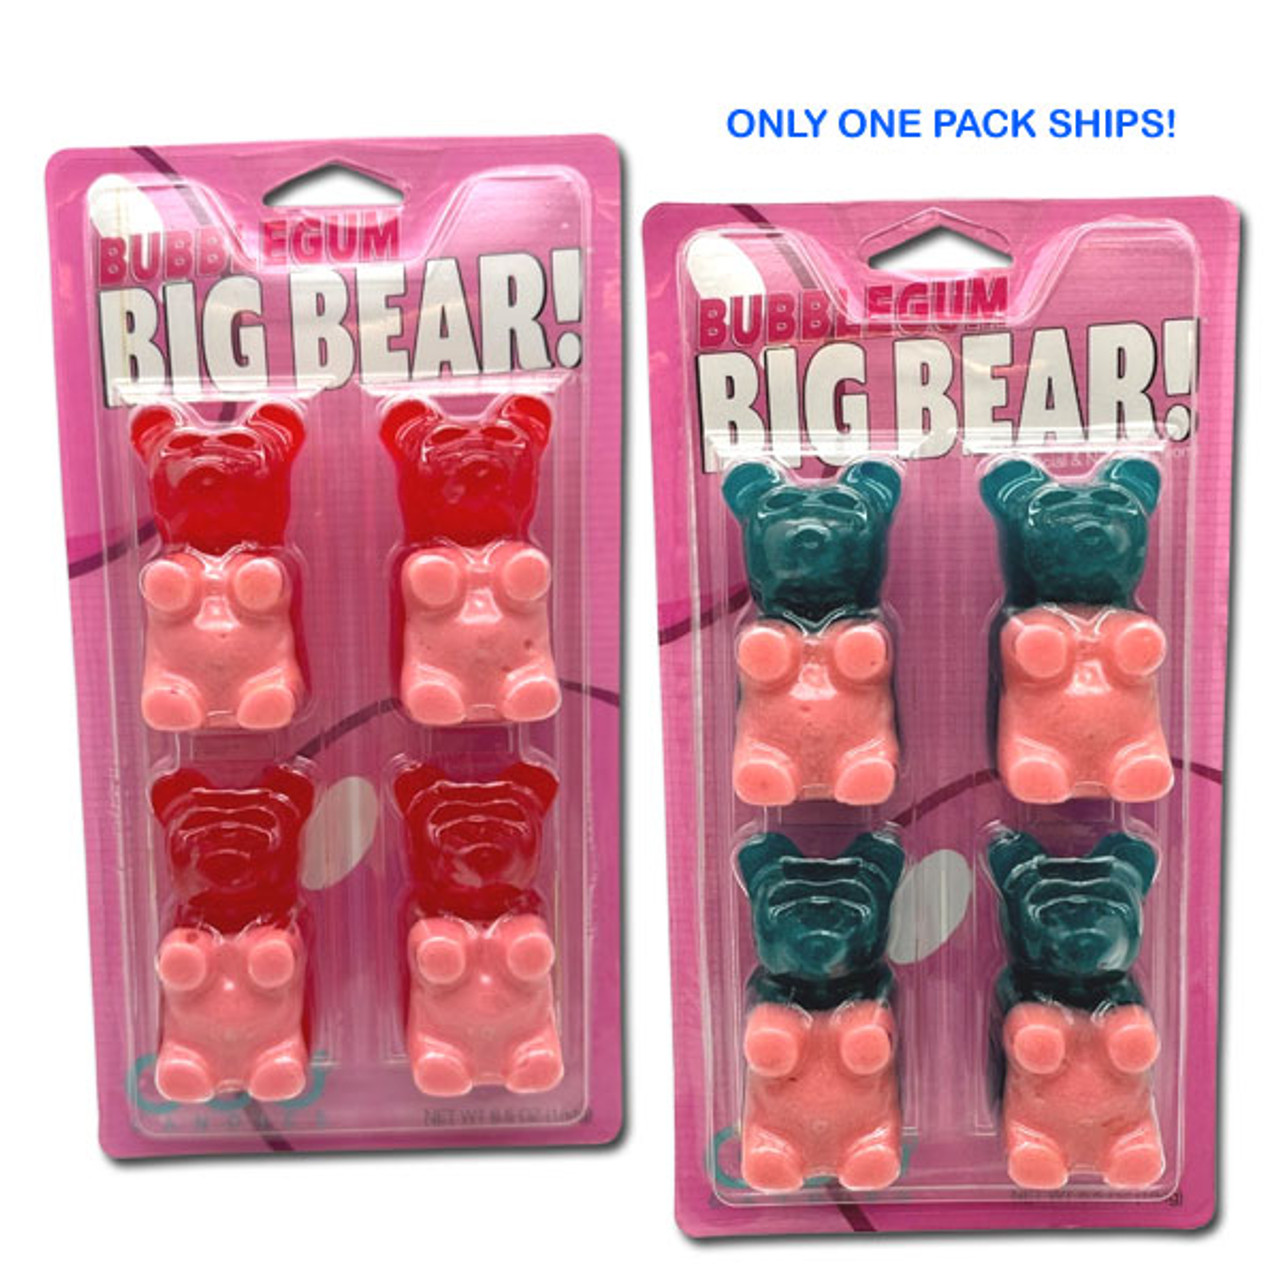 Giant 5 LB Gummy Bear - Bubble Gum